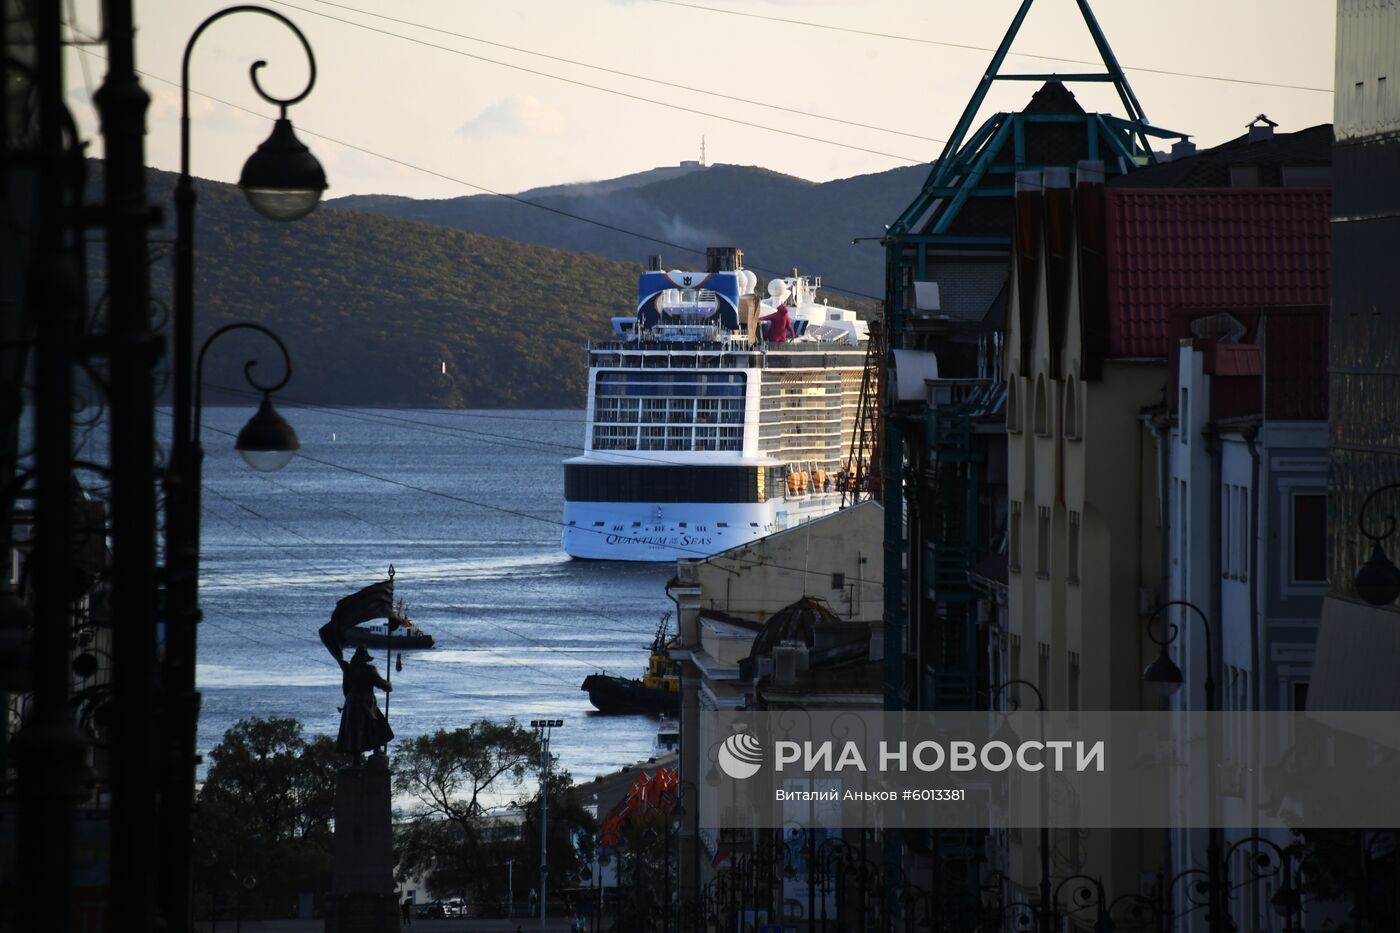 Гигантский круизный лайнер Quantum of the Seas прибыл в порт Владивостока